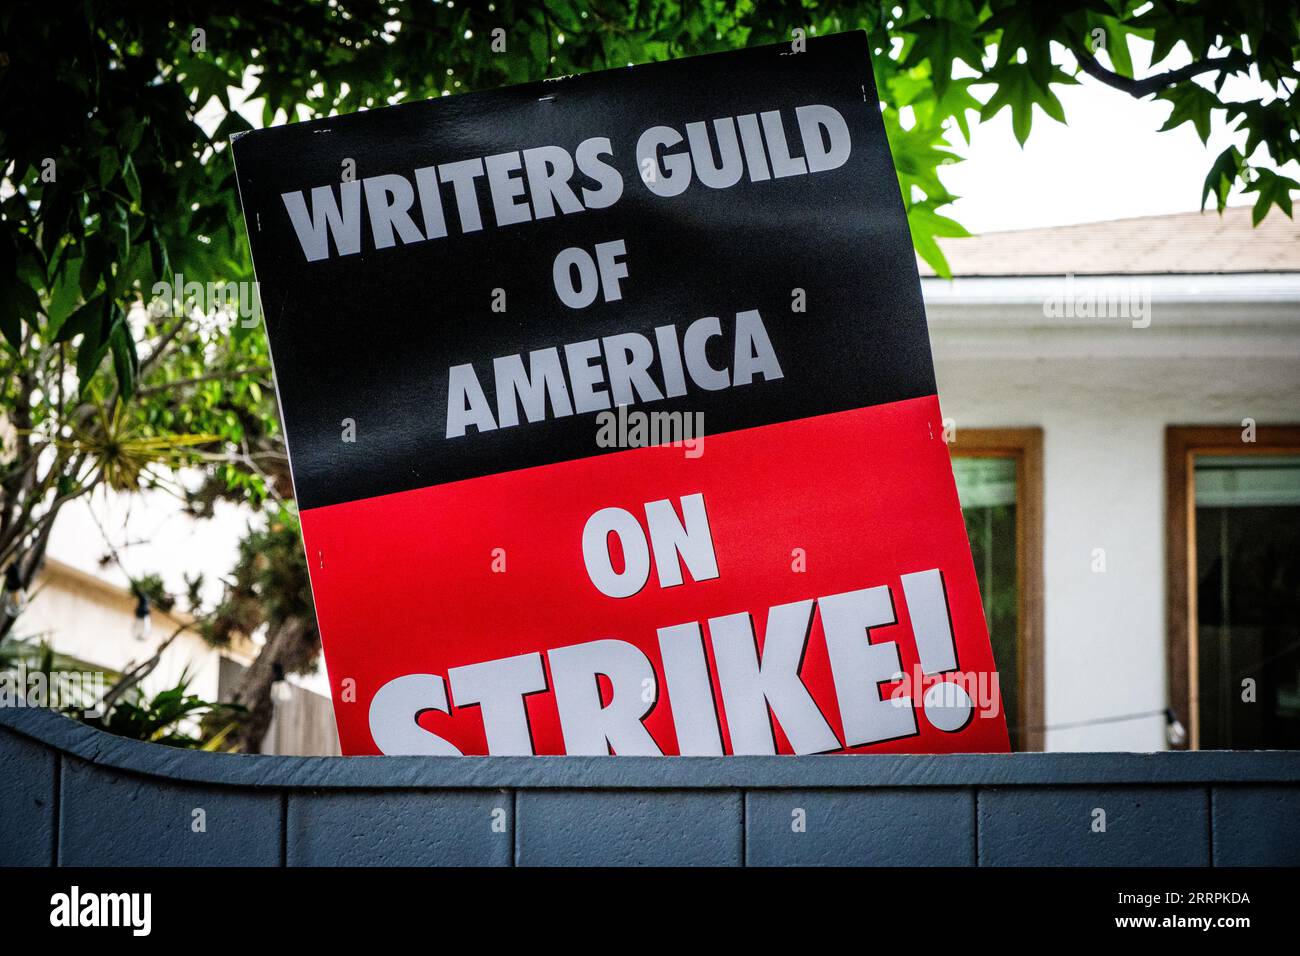 Unterschreiben Sie die Unterstützung der Writers Guild of America in Venice Beach, Kalifornien, USA. Die Gilde vertritt 11.500 Drehbuchautoren im Streik. Stockfoto